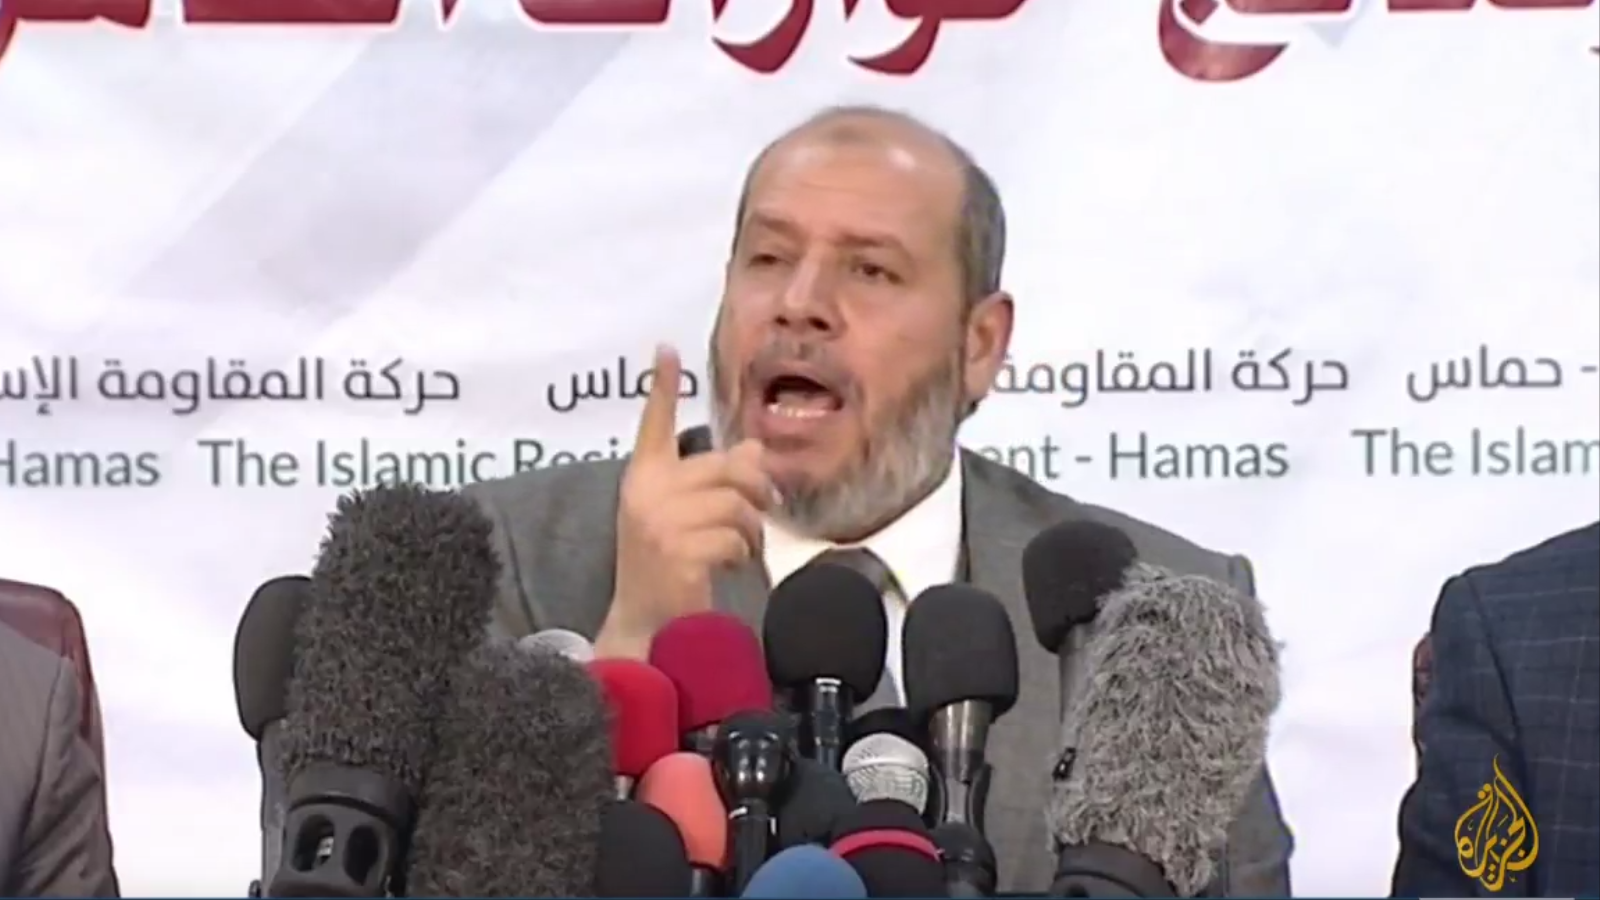 تأخذنا تصريحات الدكتور خليل الحية القيادي البارز في حركة حماس إلى مزيد من الوضوح حينما عزز من قيمة يوم النكبة وأهميته